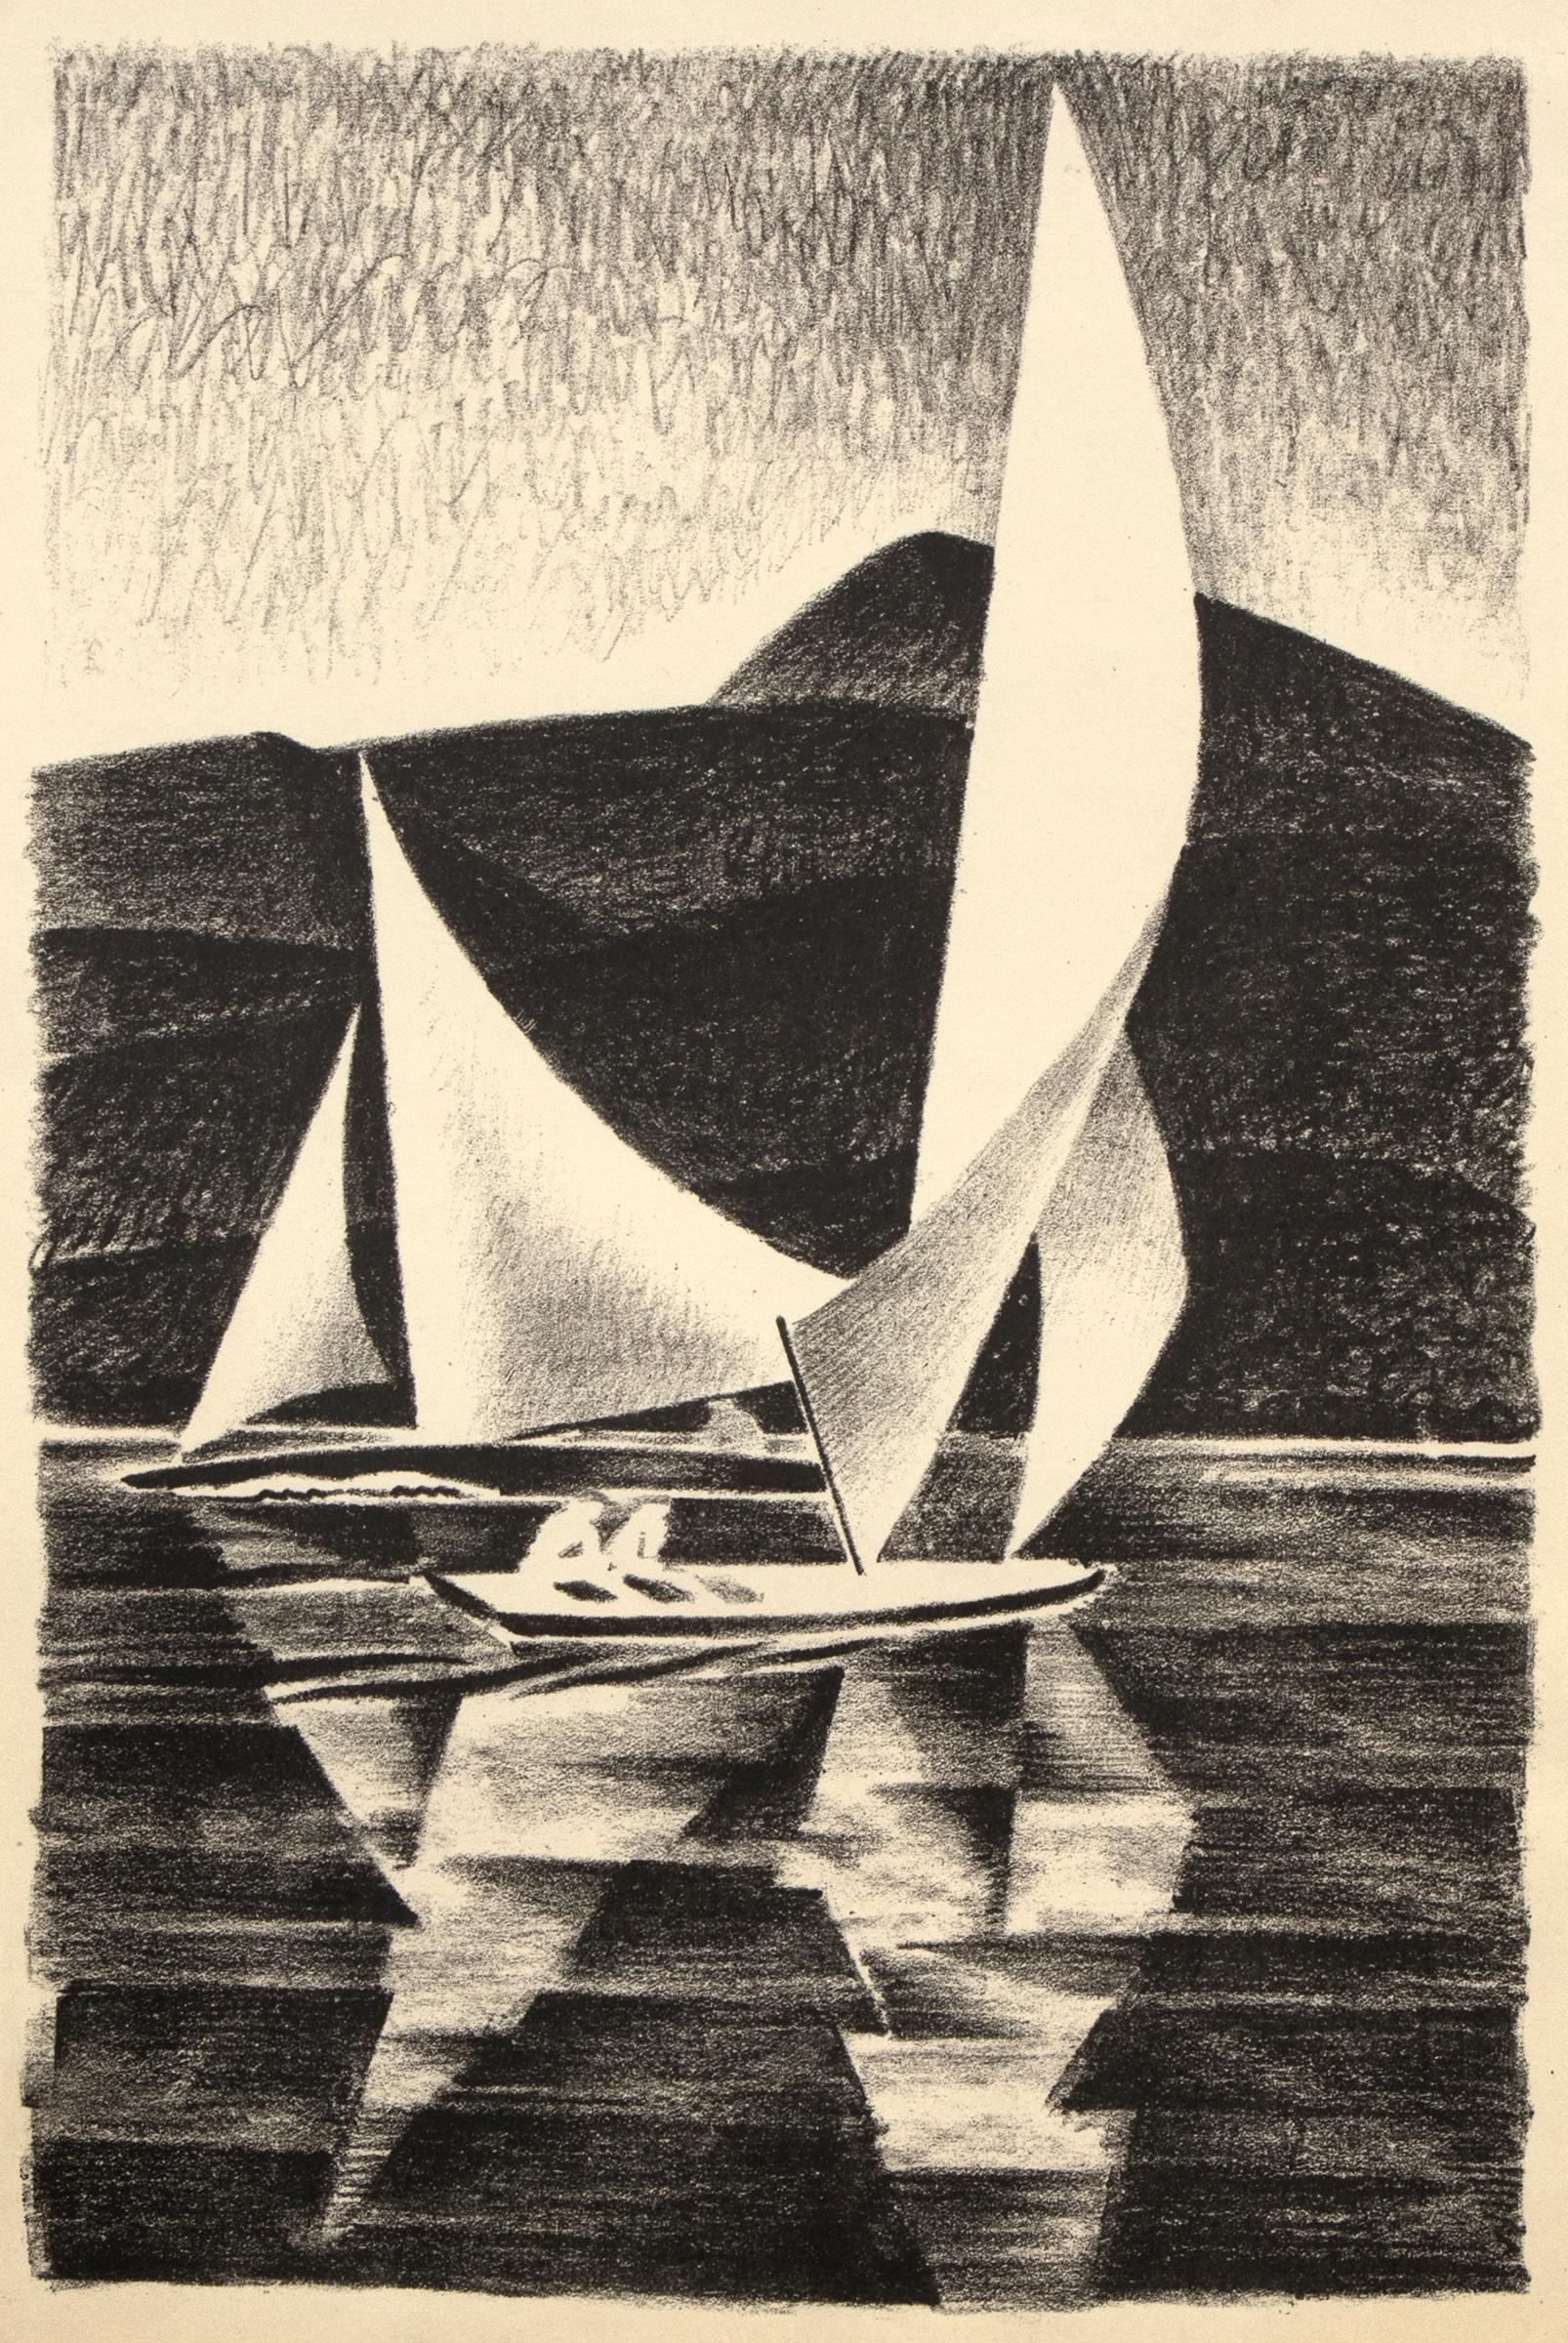 Grand Lake, Yacht Races, Colorado Mountain Lake, 1930s Black White Print